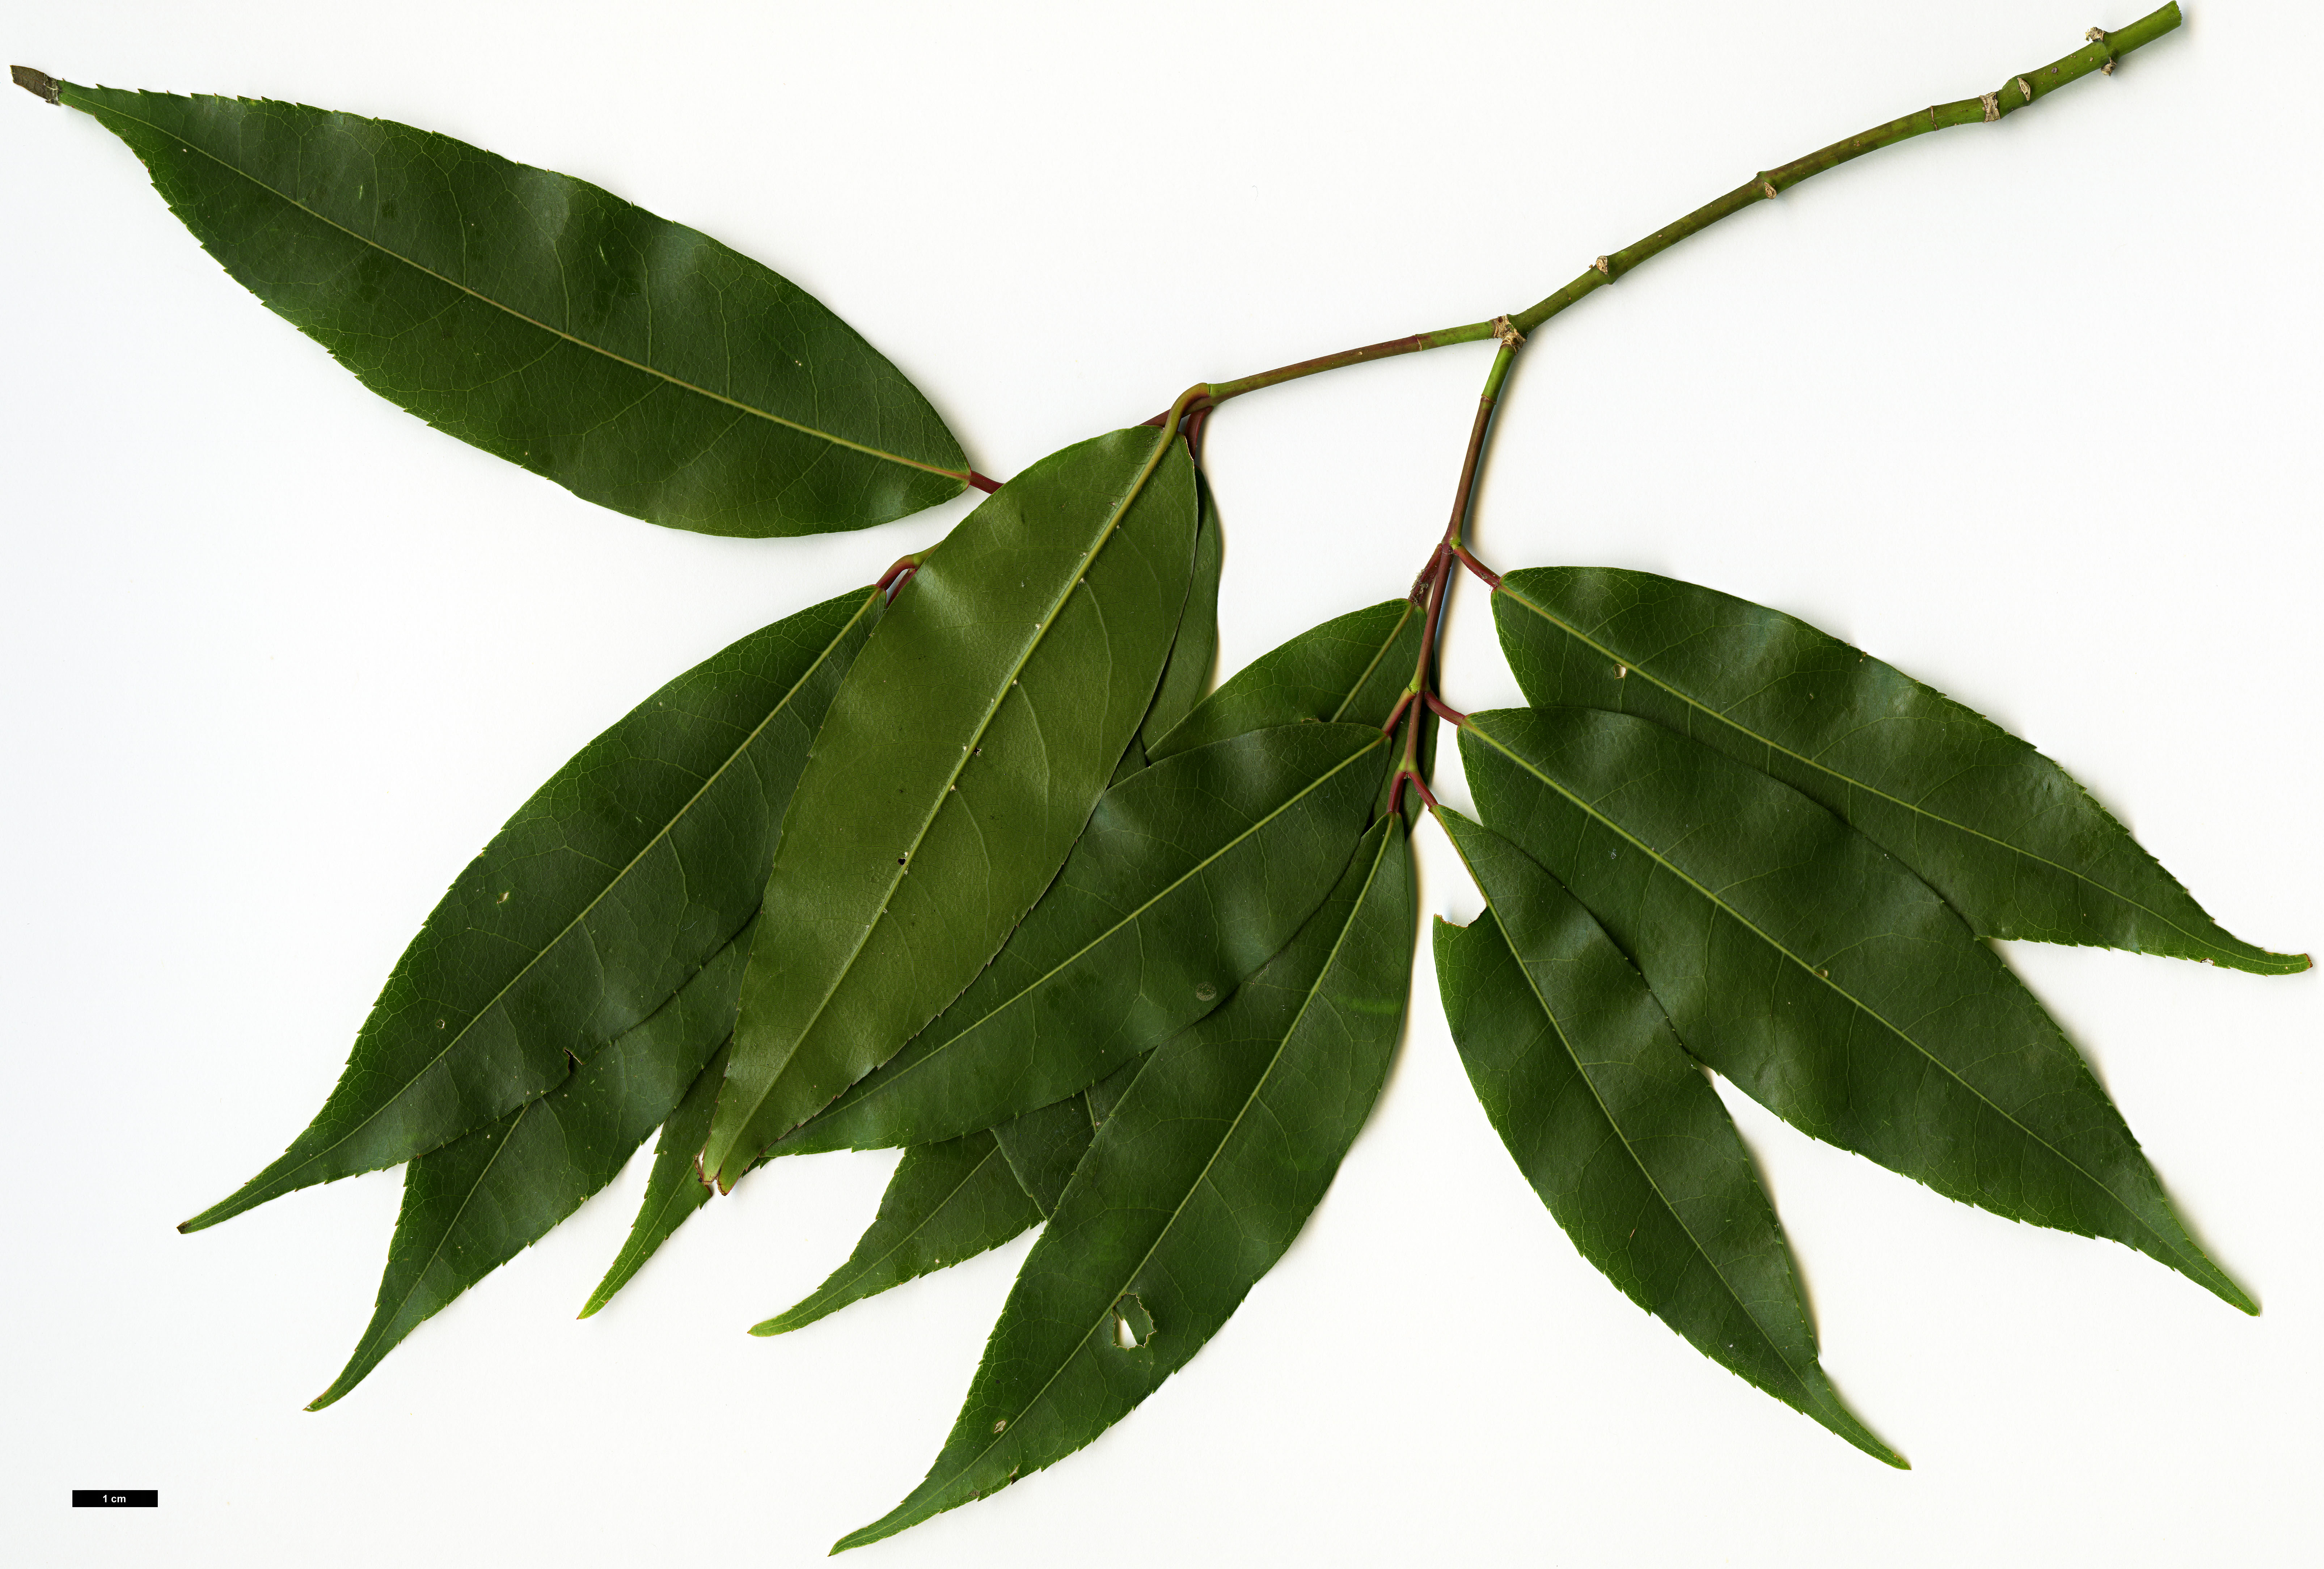 High resolution image: Family: Sapindaceae - Genus: Acer - Taxon: laevigatum